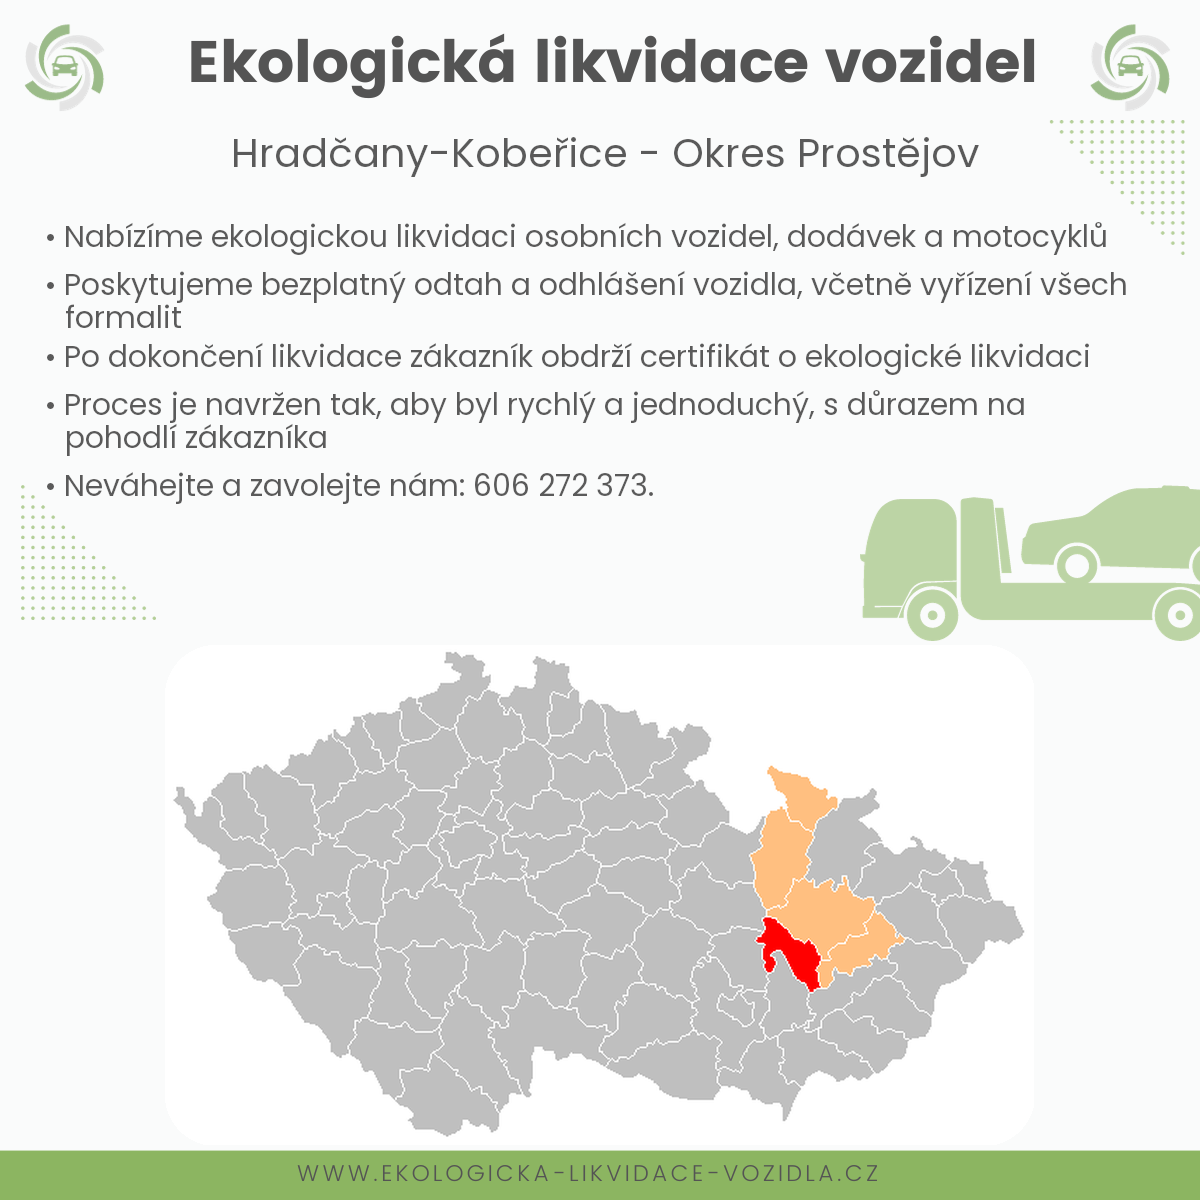 likvidace vozidel - Hradčany-Kobeřice